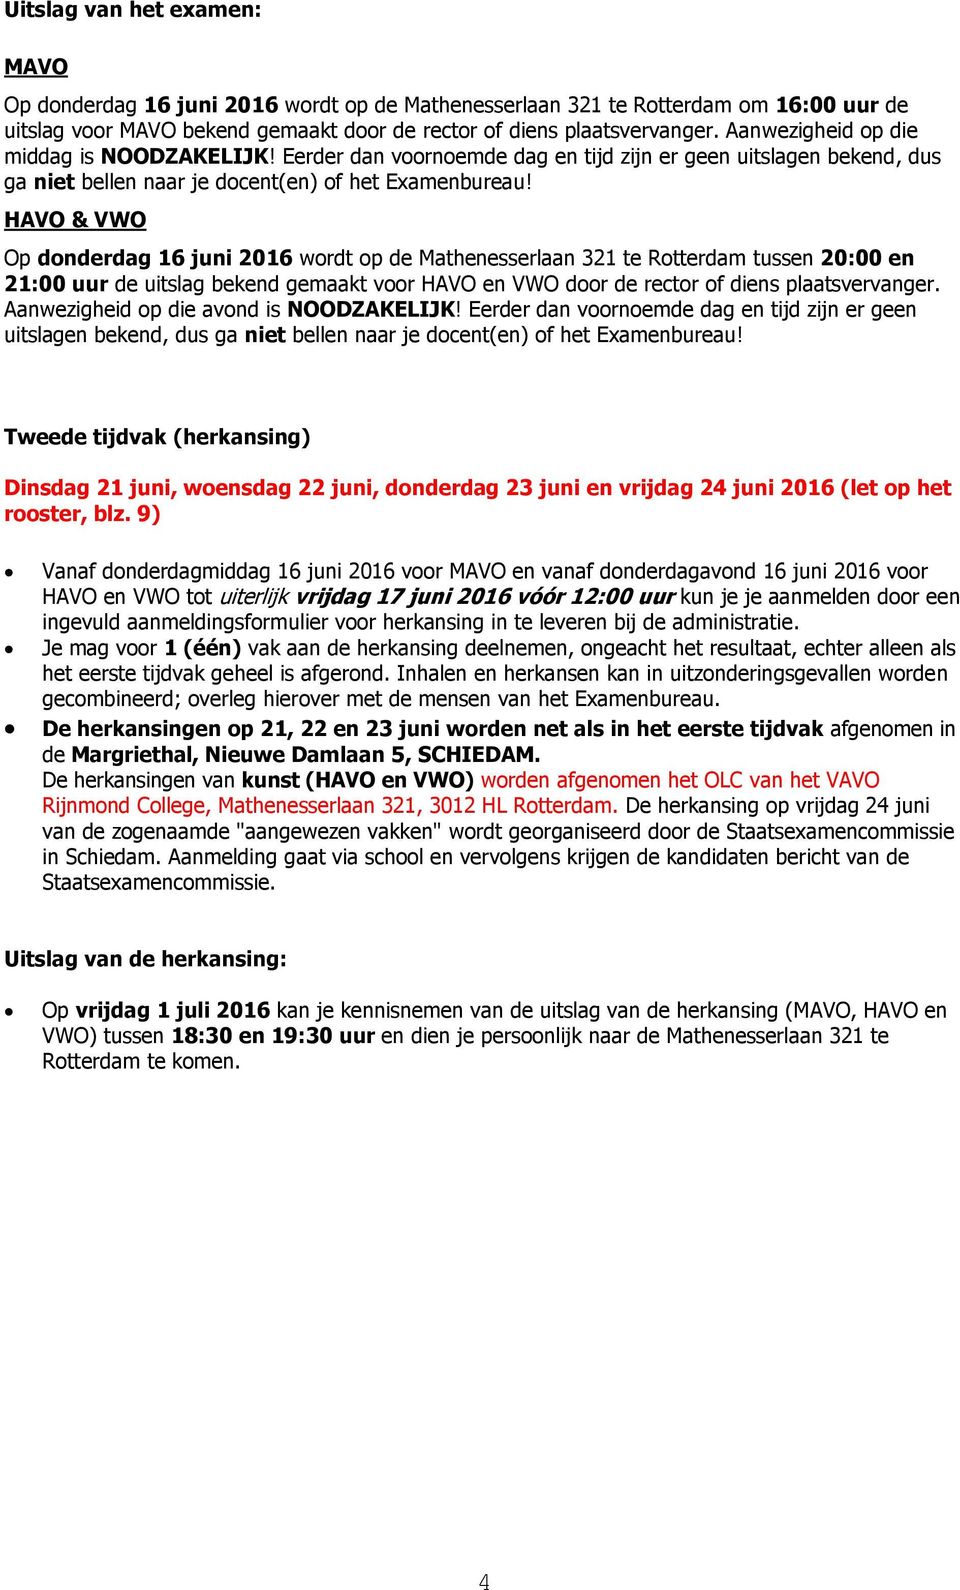 HAVO & VWO Op donderdag 16 juni 2016 wordt op de Mathenesserlaan 321 te Rotterdam tussen 20:00 en 21:00 uur de uitslag bekend gemaakt voor HAVO en VWO door de rector of diens plaatsvervanger.